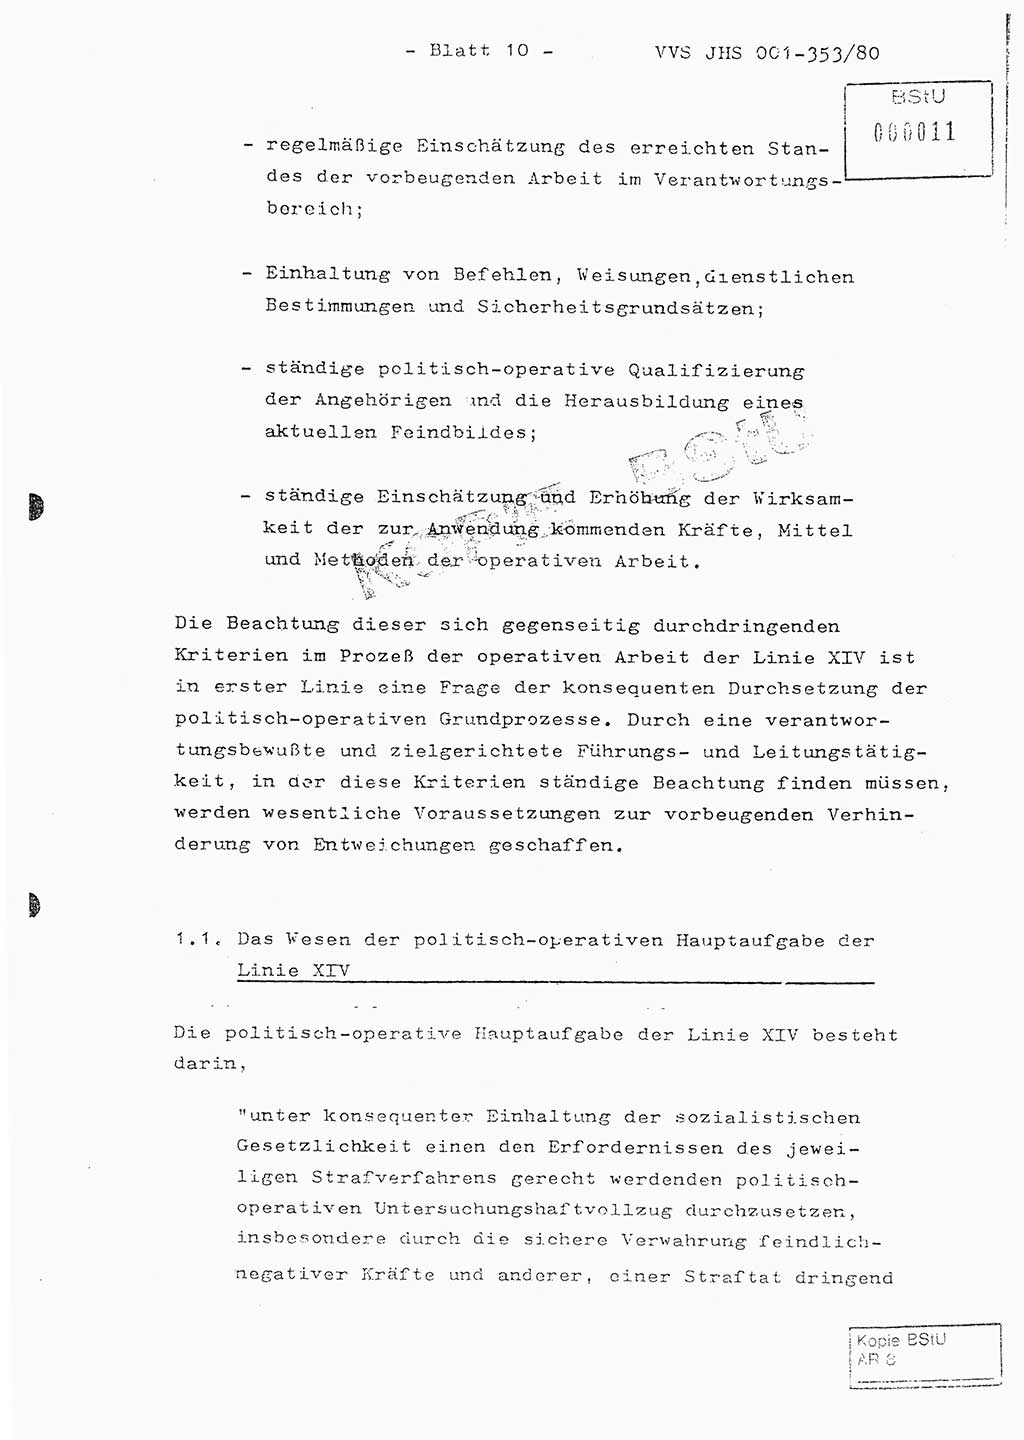 Diplomarbeit Hauptmann Joachim Klaumünzner (Abt. ⅩⅣ), Ministerium für Staatssicherheit (MfS) [Deutsche Demokratische Republik (DDR)], Juristische Hochschule (JHS), Vertrauliche Verschlußsache (VVS) o001-353/80, Potsdam 1980, Blatt 10 (Dipl.-Arb. MfS DDR JHS VVS o001-353/80 1980, Bl. 10)